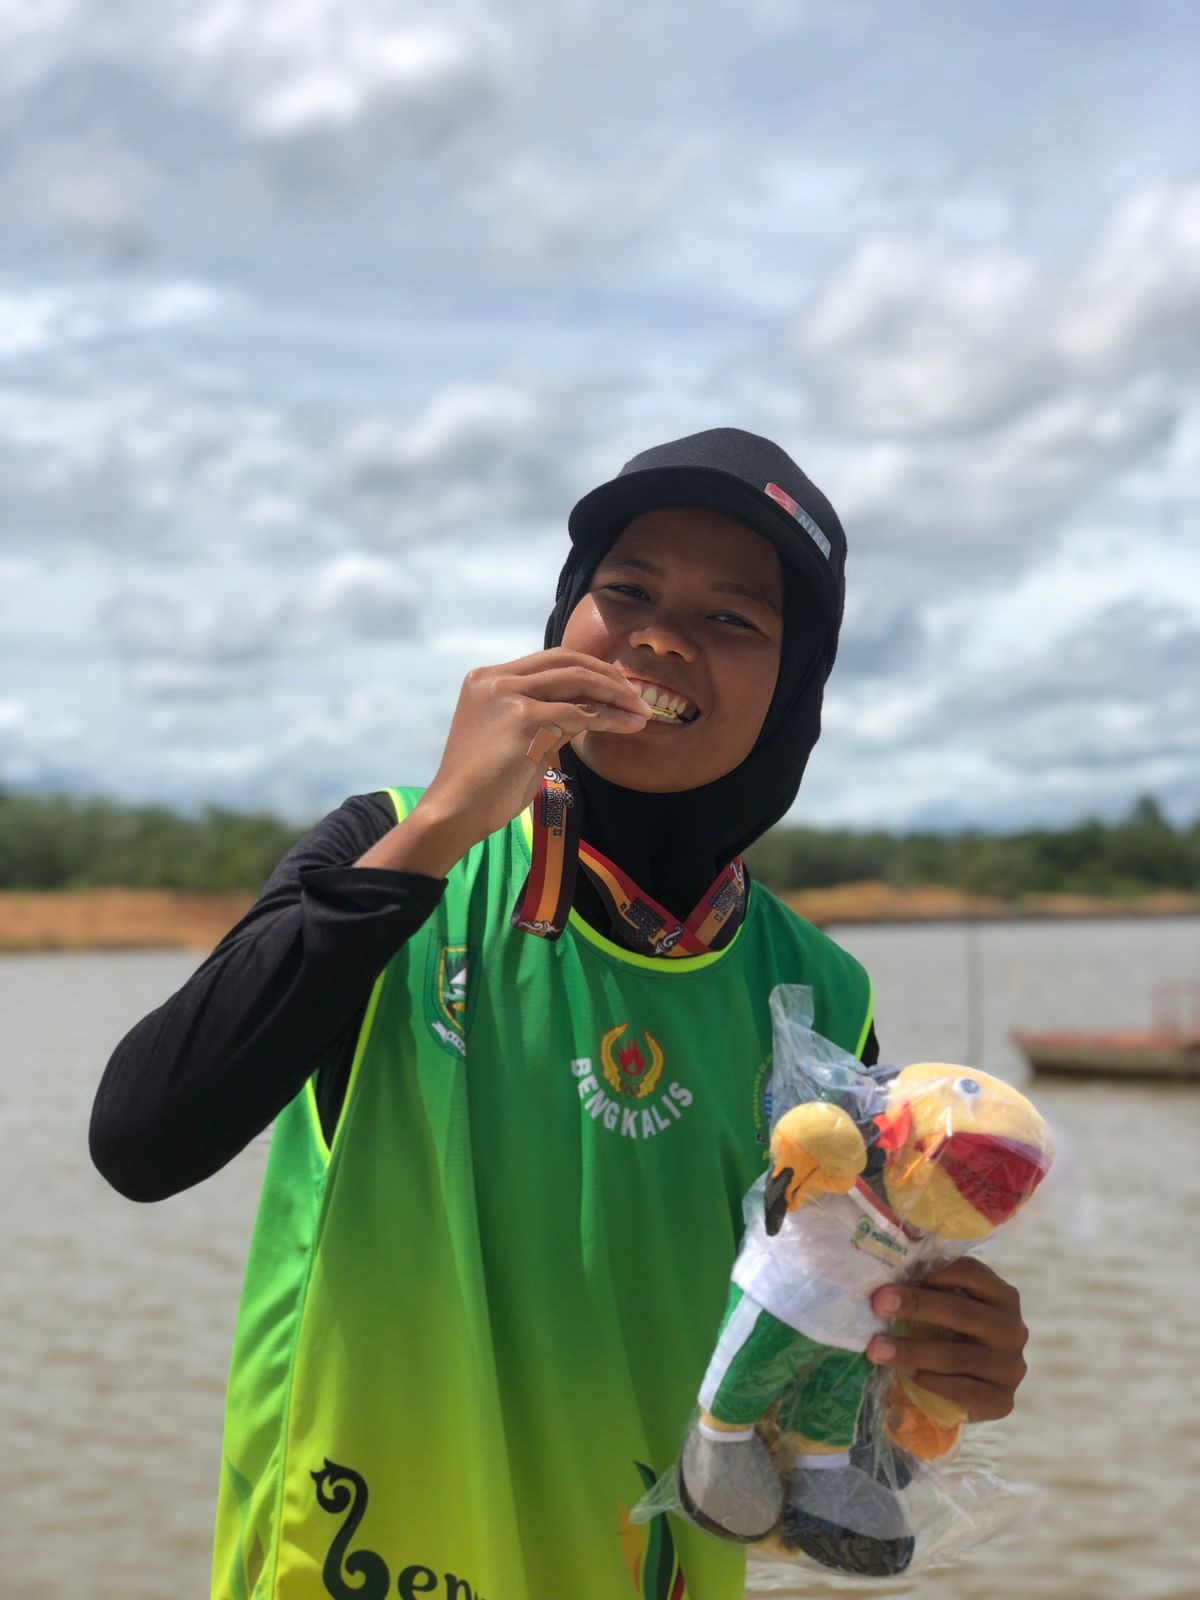 Asmira Mahasiswa STIE Syariah Bengkalis Berhasil Meraih Juara 1 dalam Kejuaraan Lomba Dayung Porprov di Kuansing